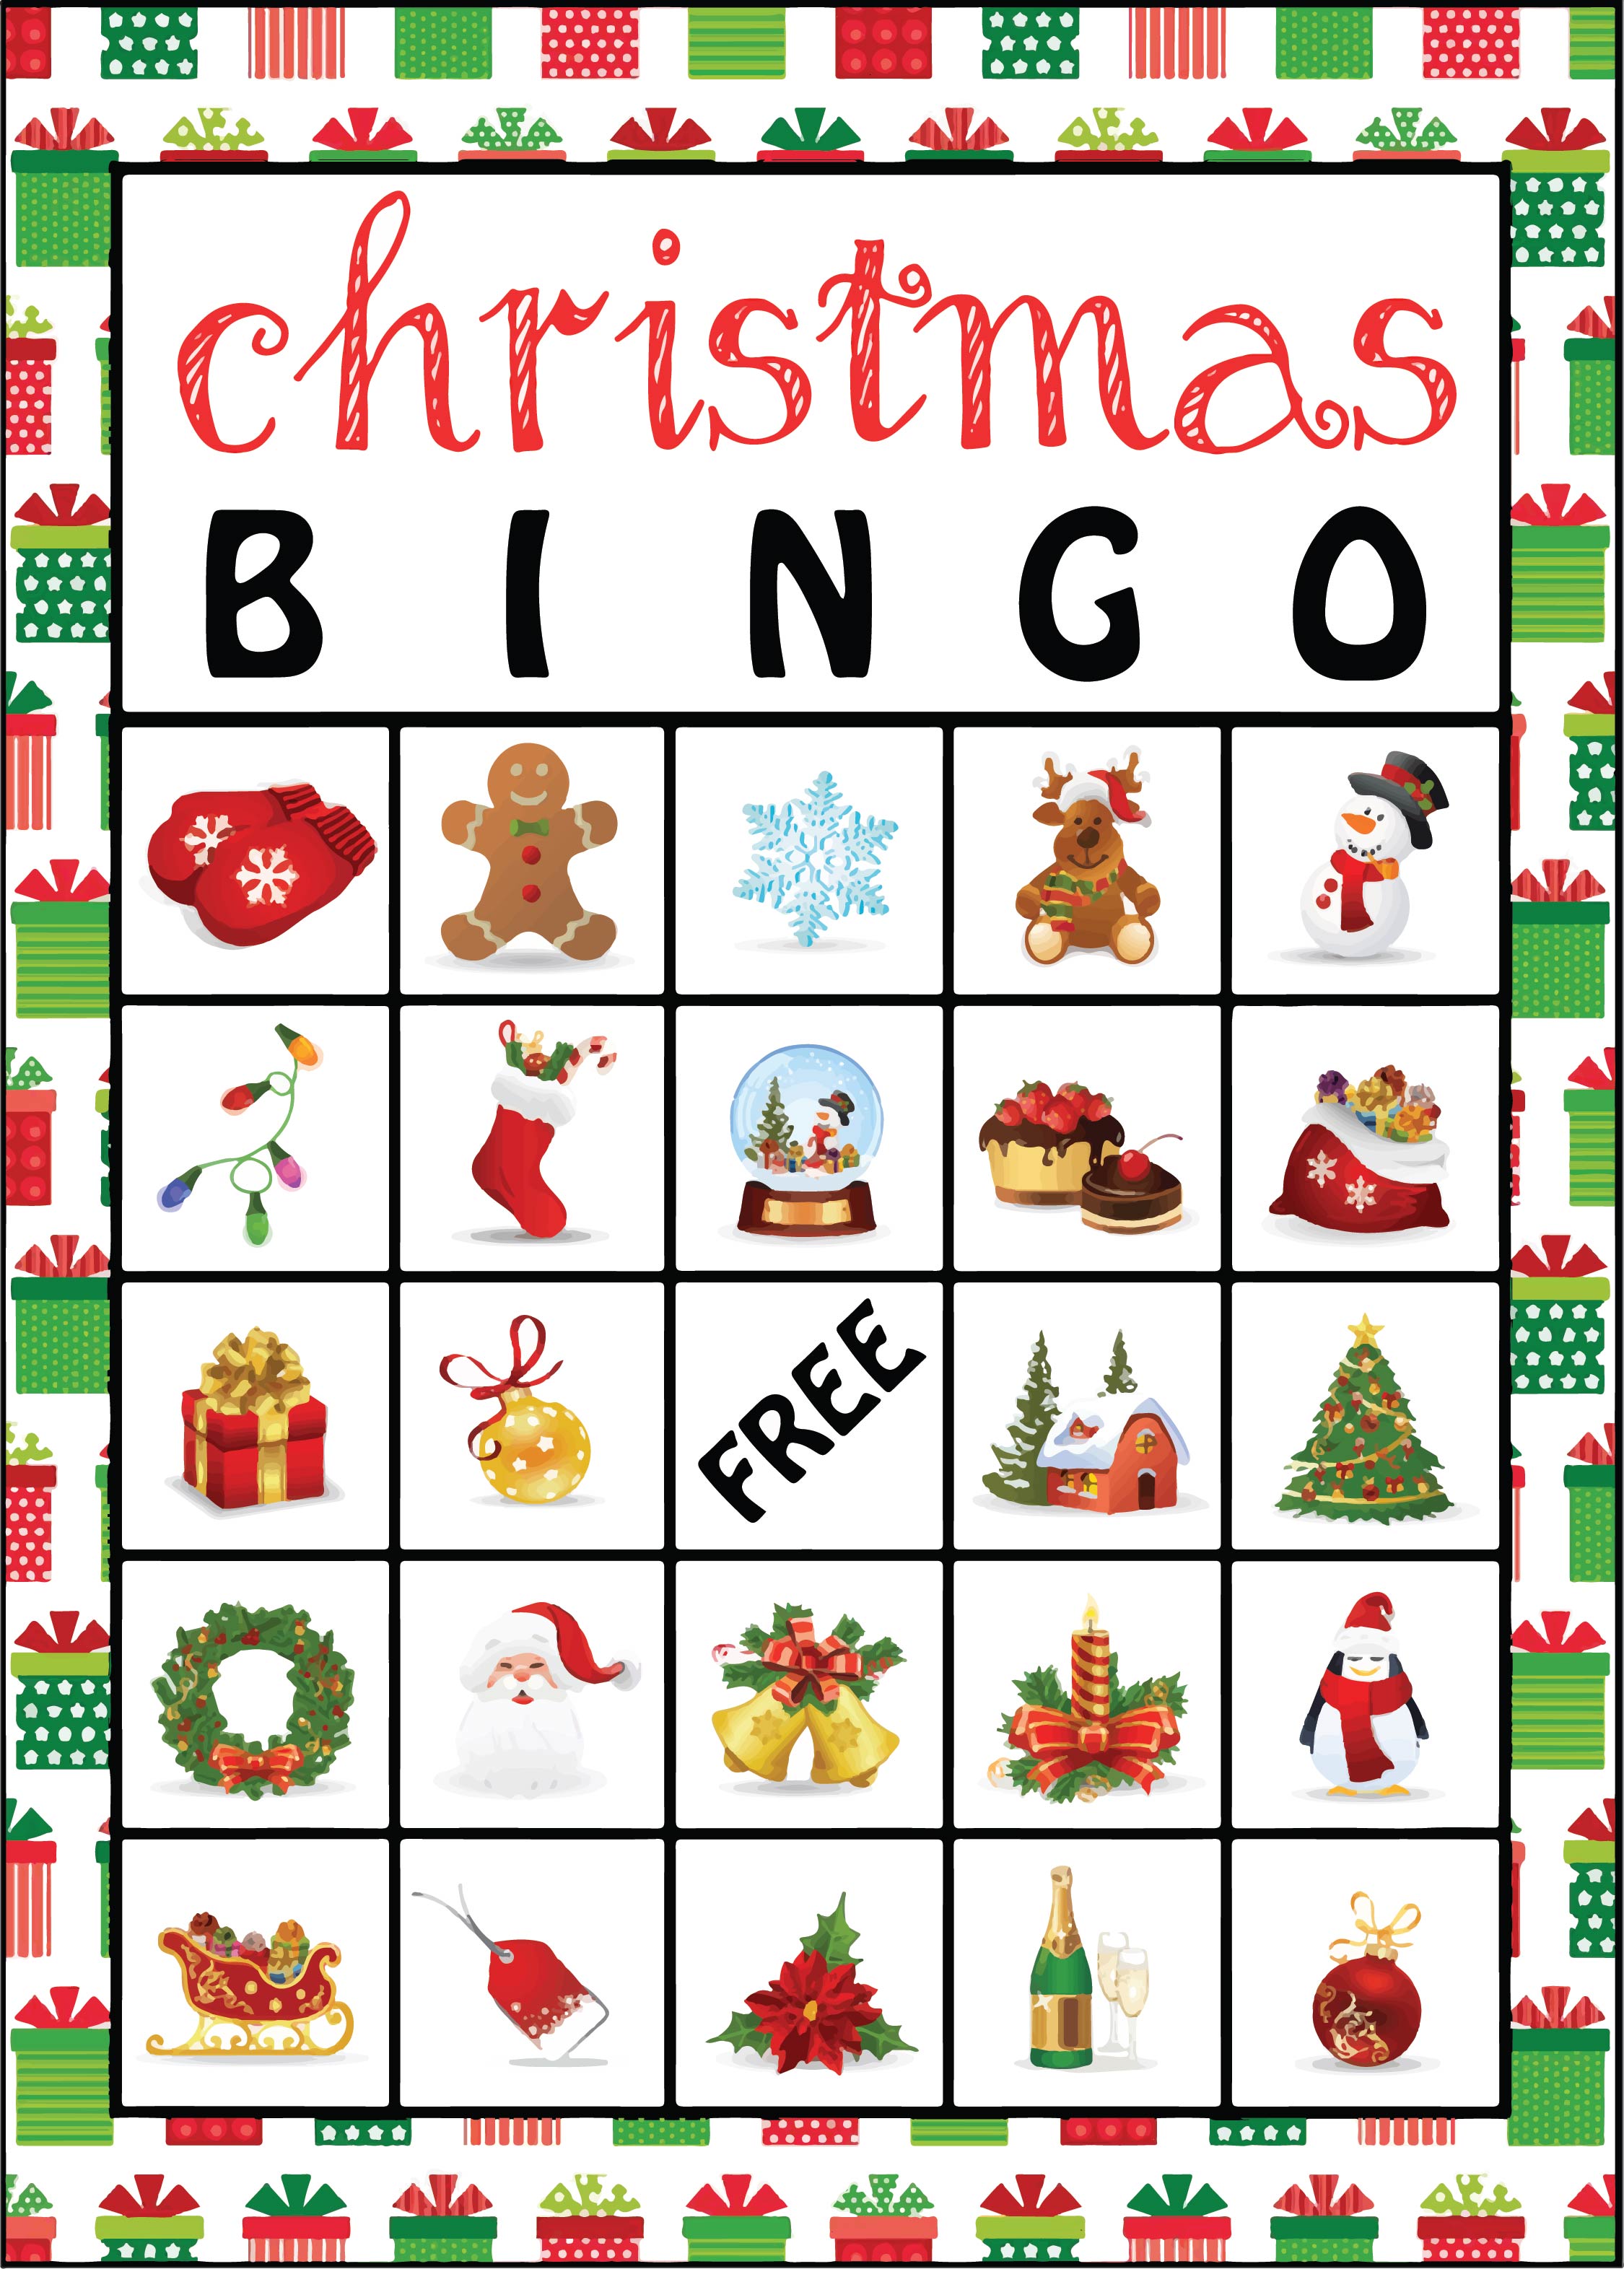 Christian Christmas Bingo Cards - 9 Free PDF Printables | Printablee